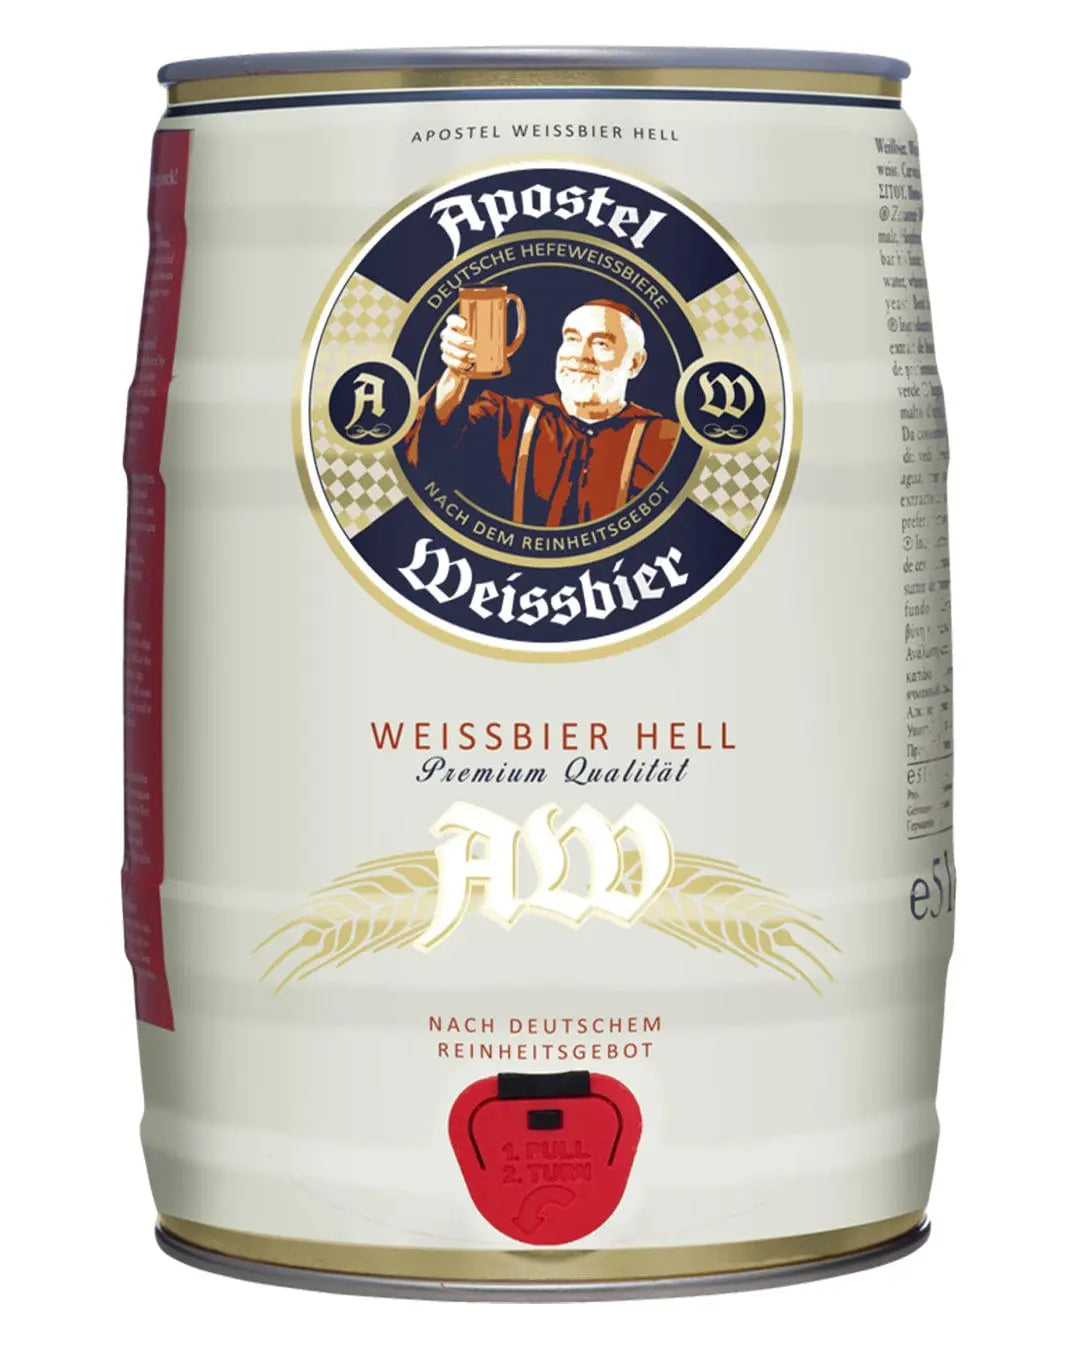 Apostel Hefe Weissbier Beer Keg, 5 L, Beer